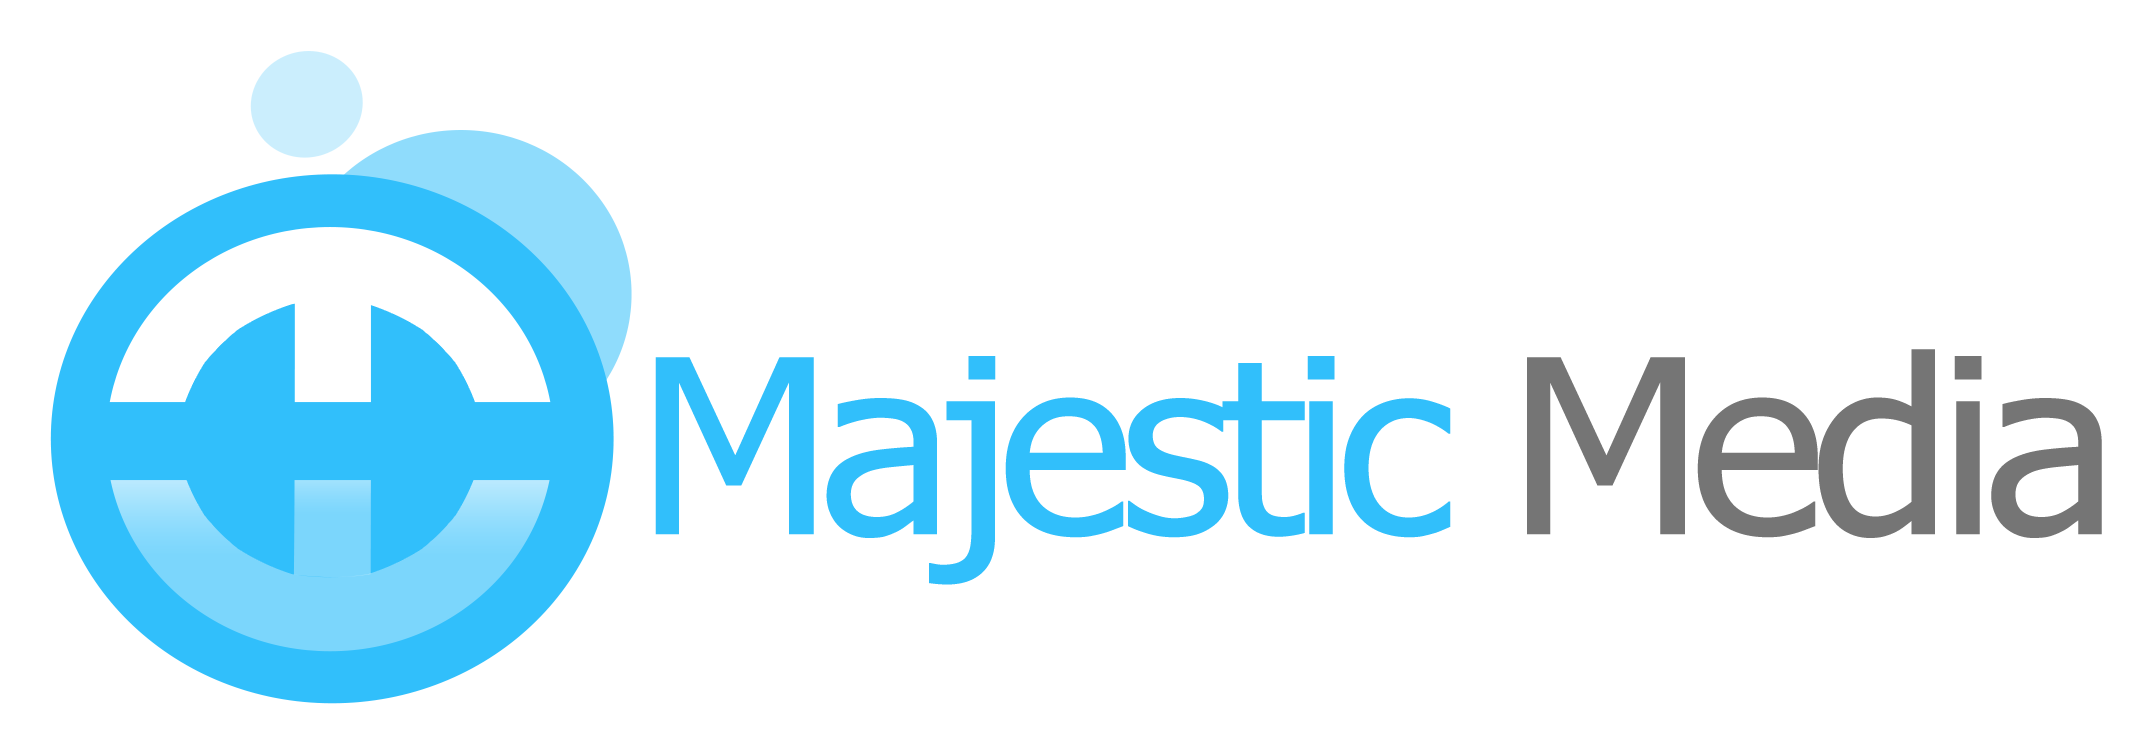 Majestic Media UK